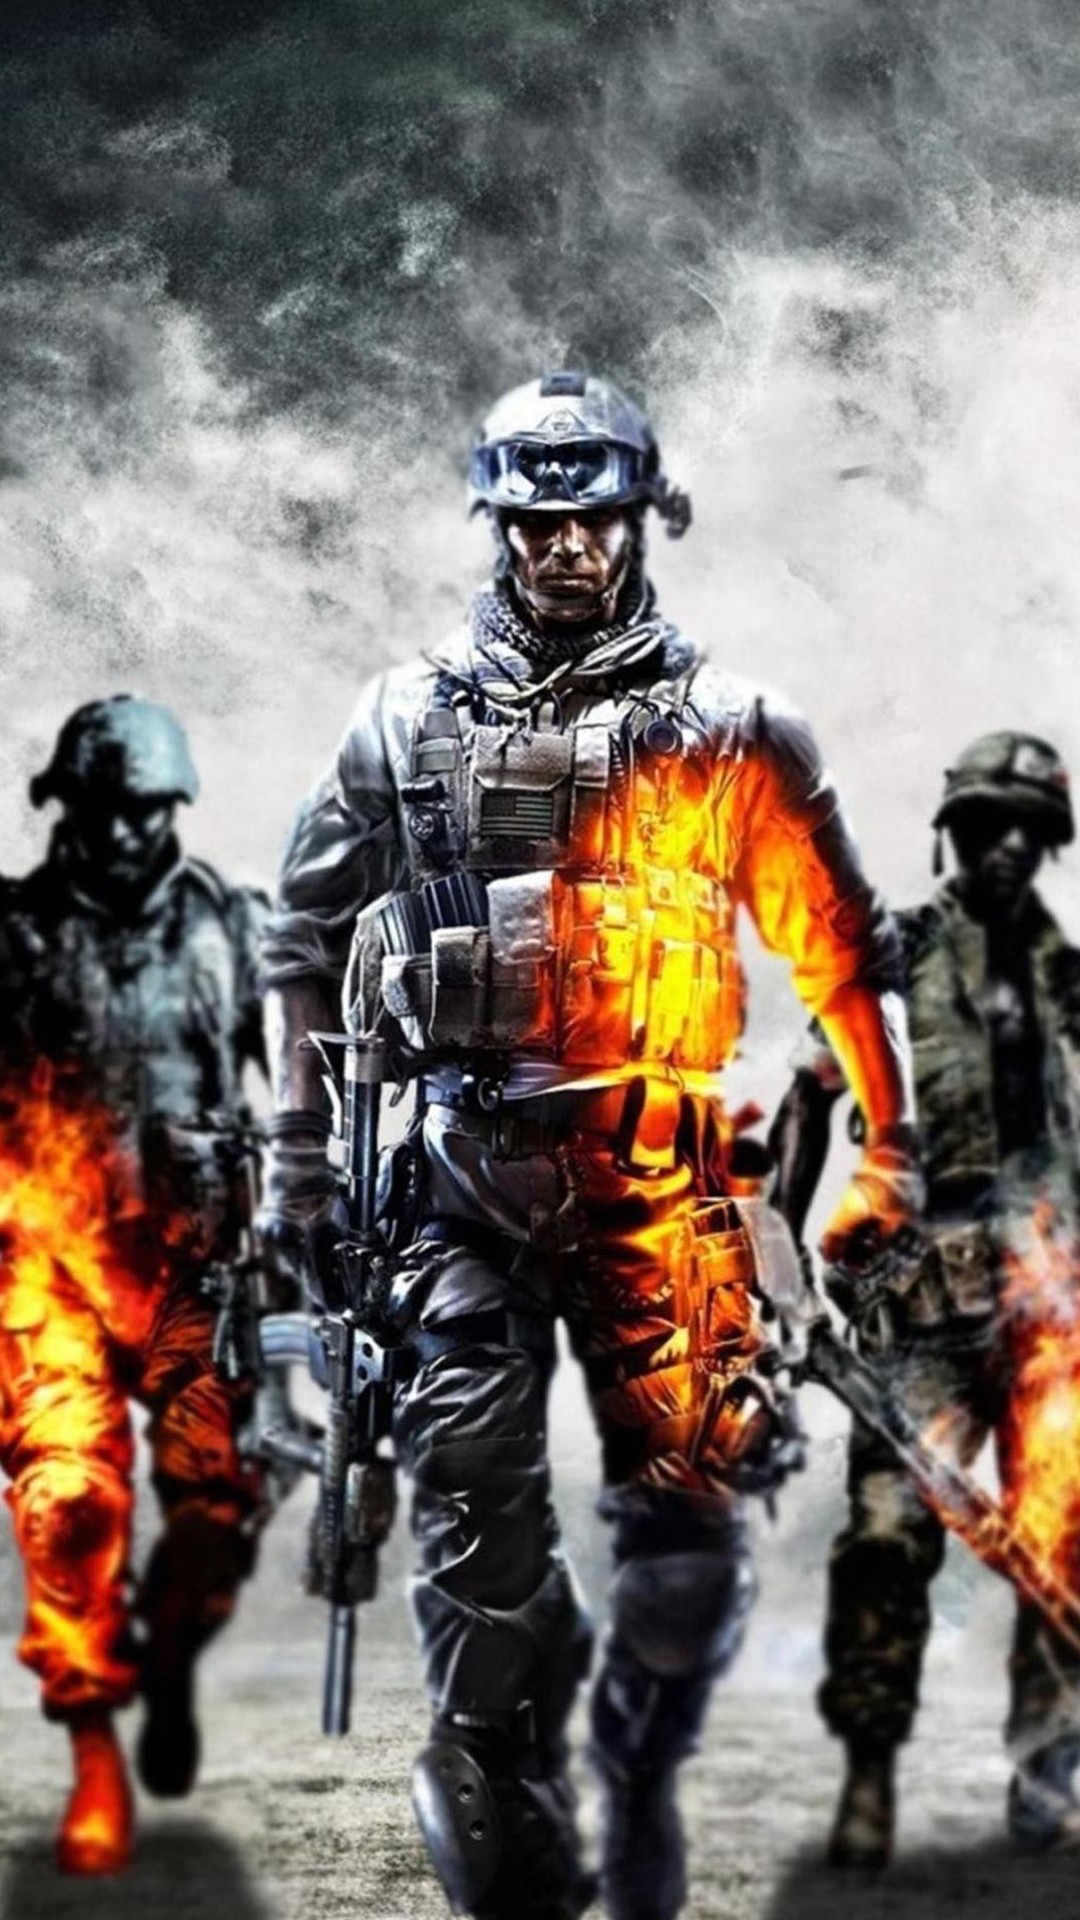 Bạn là fan của game Call of Duty trên điện thoại iPhone? Bạn muốn có một đồng hồ iPhone thiết kế độc đáo, phong cách để đồng hành cùng bạn trong các trận đấu khốc liệt? Không nên bỏ lỡ chiếc đồng hồ iPhone Call of Duty đặc biệt này! 